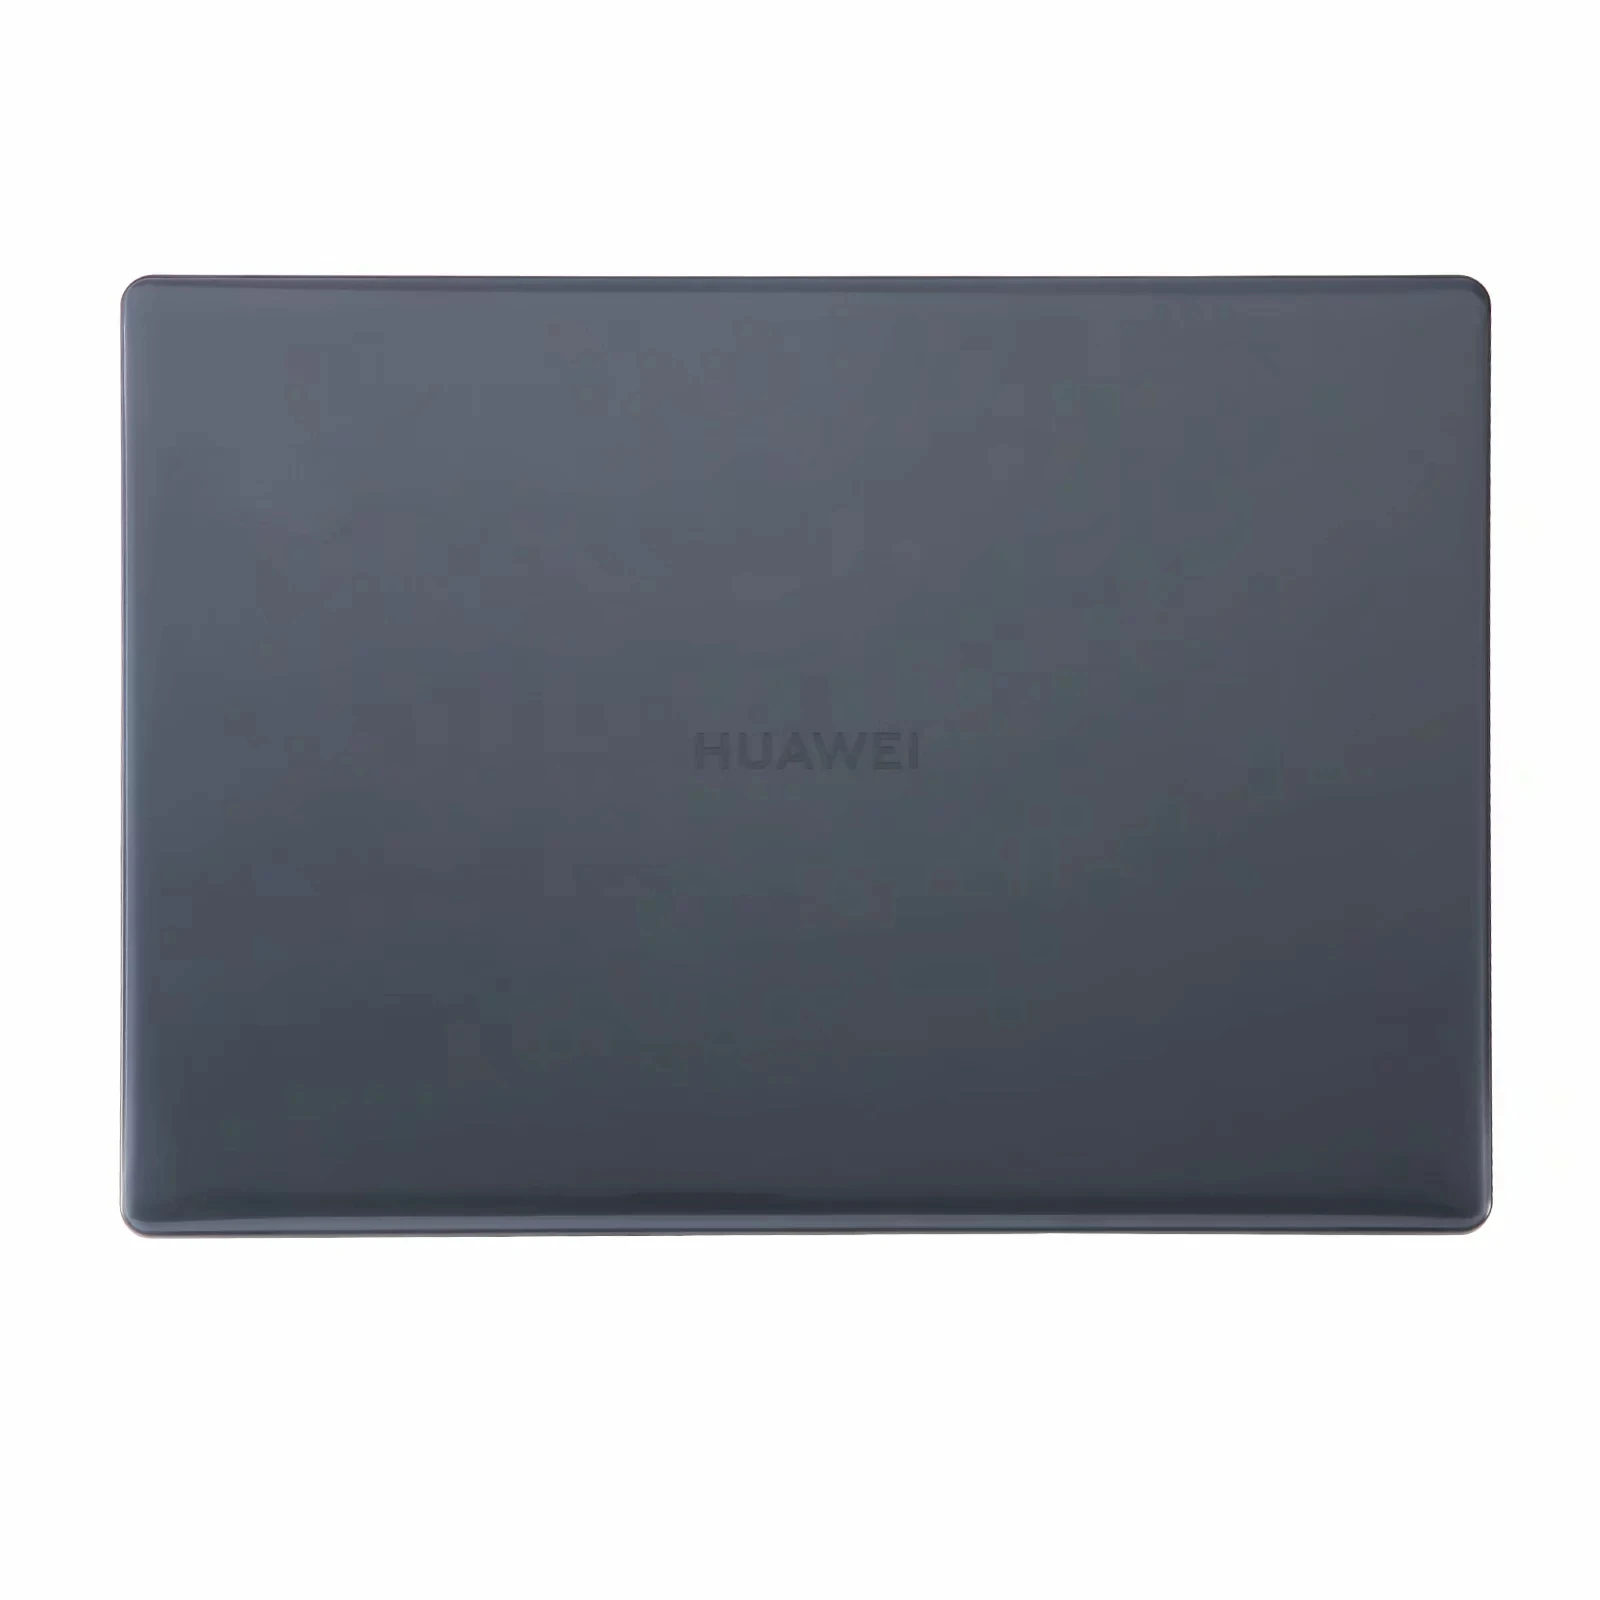 Прорезиненный жесткий футляр Защита кожи для 14-дюймового ноутбука huawei MateBook 14 - Цвет: Crystal Black